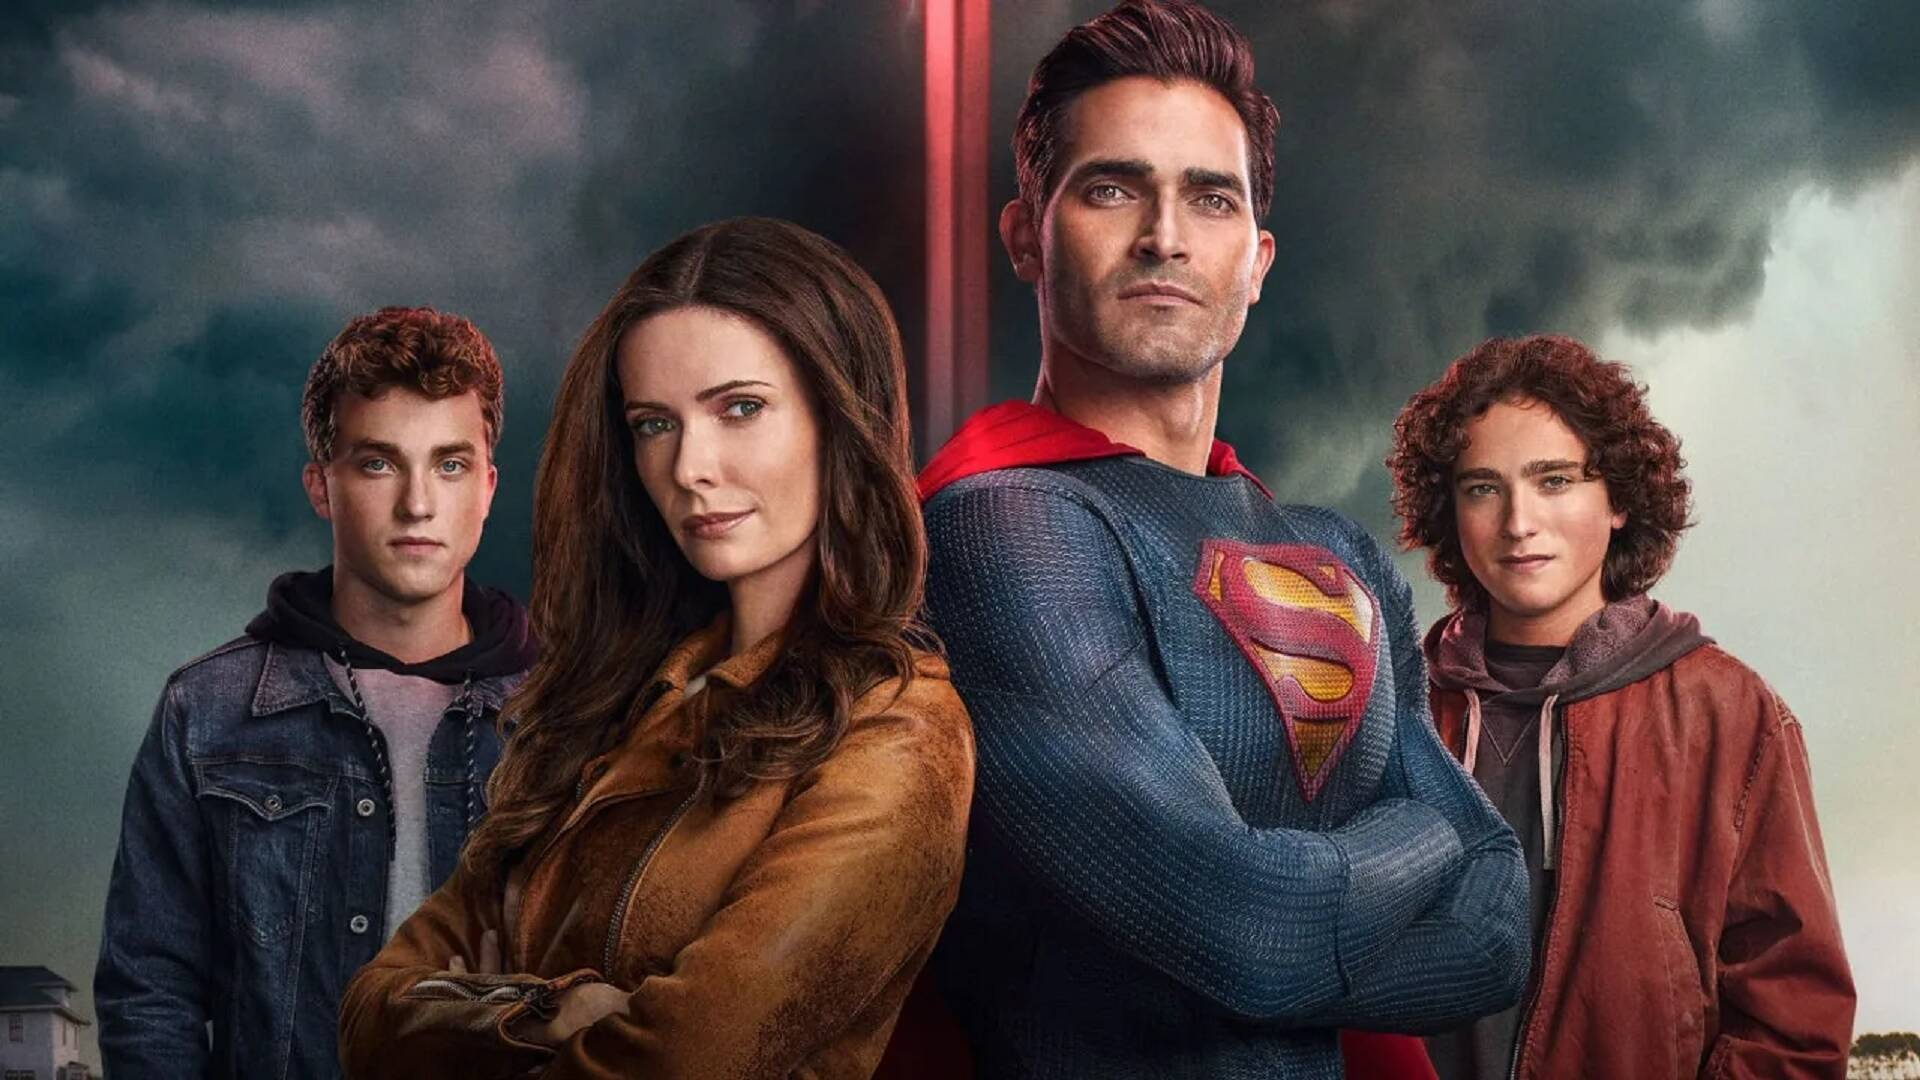 desvanecerse charla Asombrosamente Superman & Lois” se queda sin uno de sus miembros, ¿qué pasará con la  serie? - Infobae